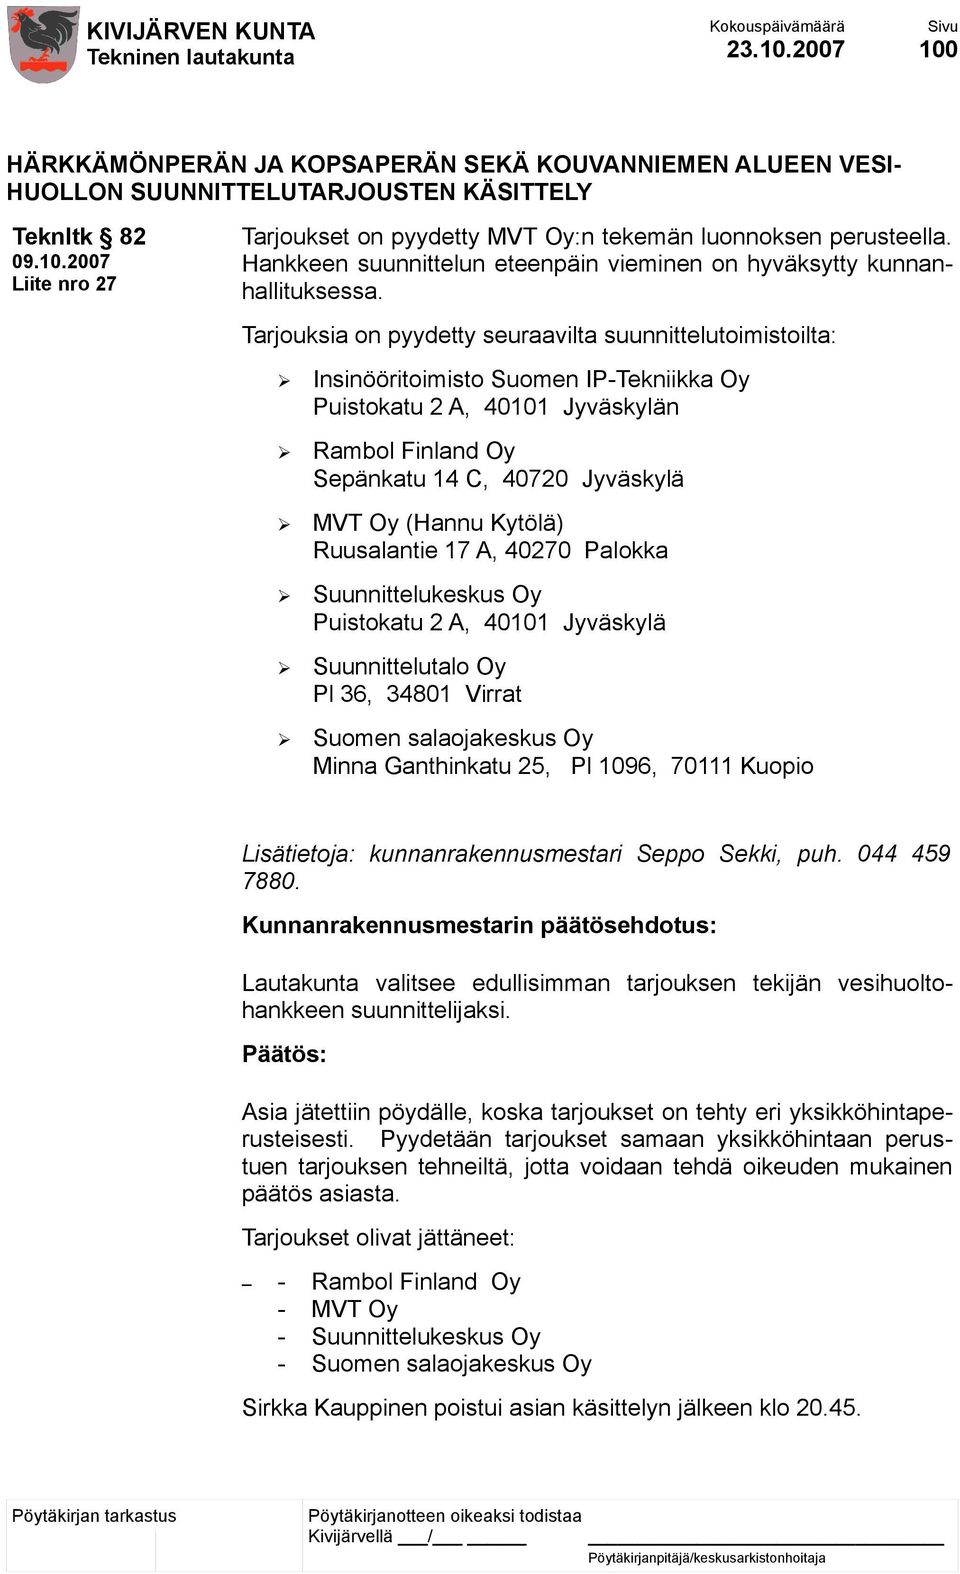 Tarjouksia on pyydetty seuraavilta suunnittelutoimistoilta: Insinööritoimisto Suomen IP-Tekniikka Oy Puistokatu 2 A, 40101 Jyväskylän Rambol Finland Oy Sepänkatu 14 C, 40720 Jyväskylä MVT Oy (Hannu